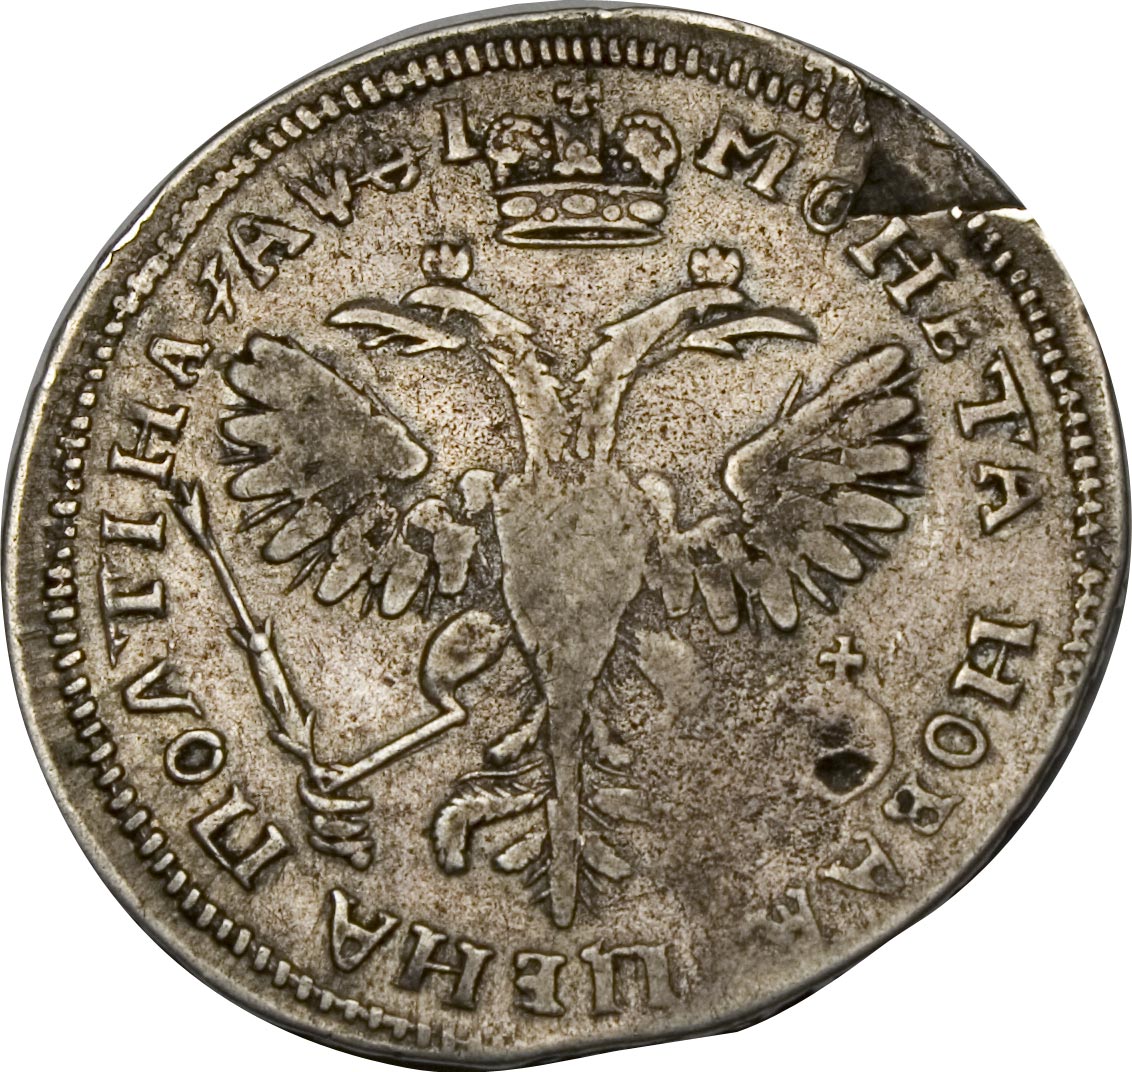 Полтина. Полтина 1719 перепутка. Полтина 1702 года Биткин # 517 (r2). Старые монеты 1719. : Полтины, четвертаки, гривенки 13 века.